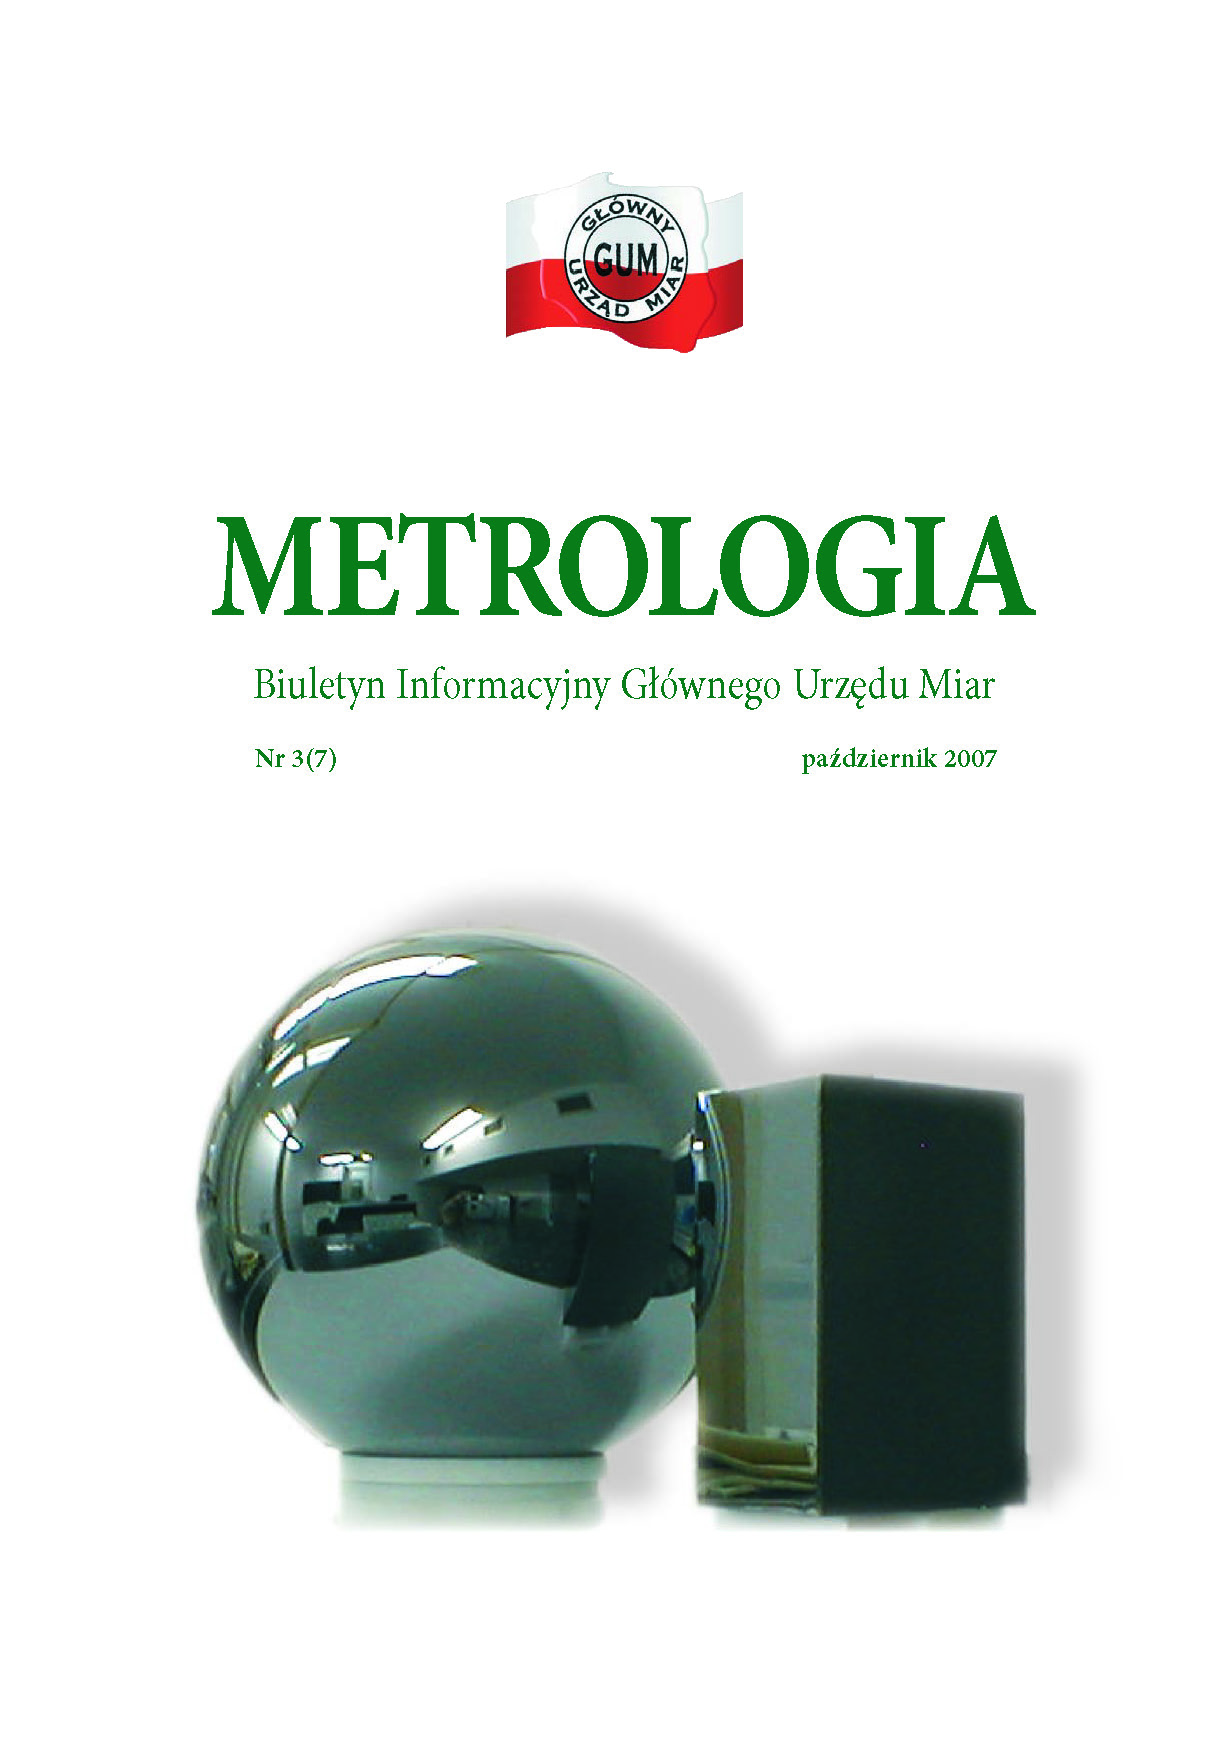 Okładka nr 3 z 2007 r. Biuletynu Informacyjnego GUM Metrologia. Na okładce pod tytułem w kolorze zielonym Metrologia, pod tytułem wzorzec gęstości - kula krzemowa.